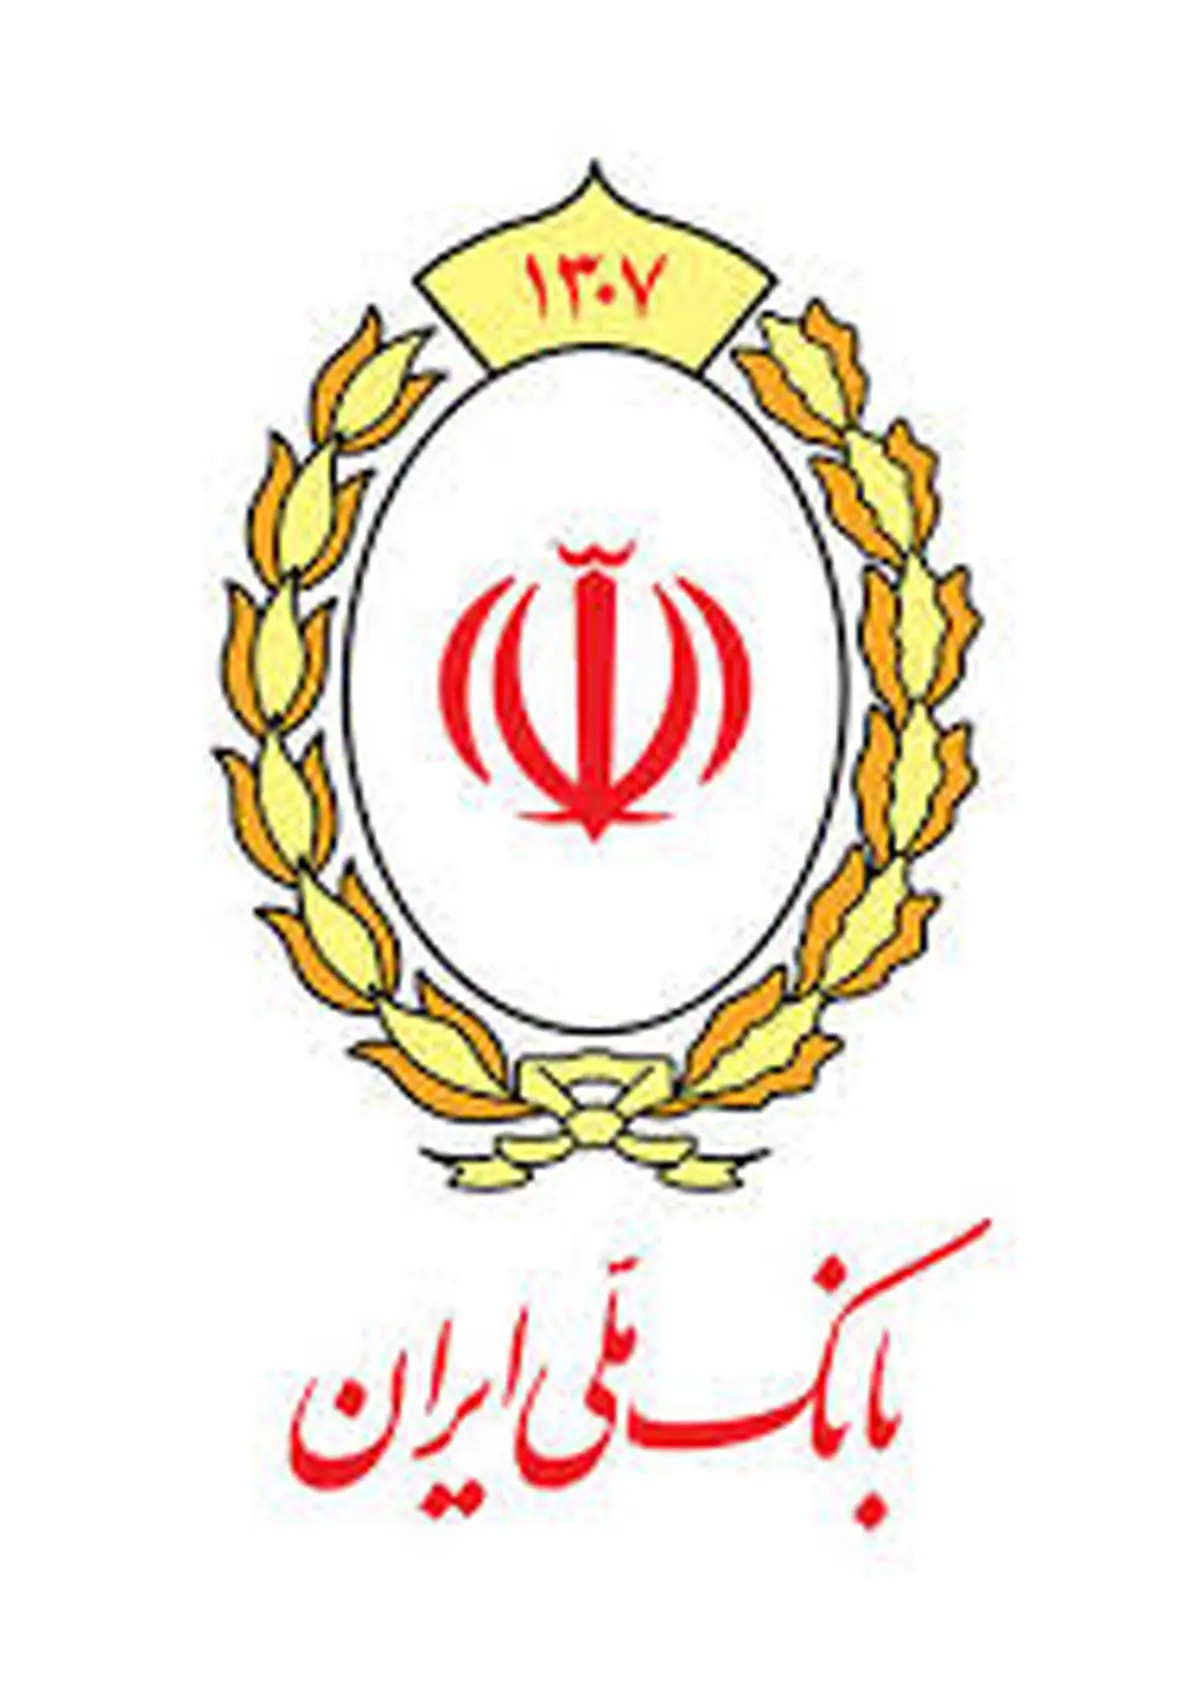 اعلام اسامی برندگان چهلمین مرحله قرعه کشی جوایز حساب های پس انداز بانک ملی ایران

